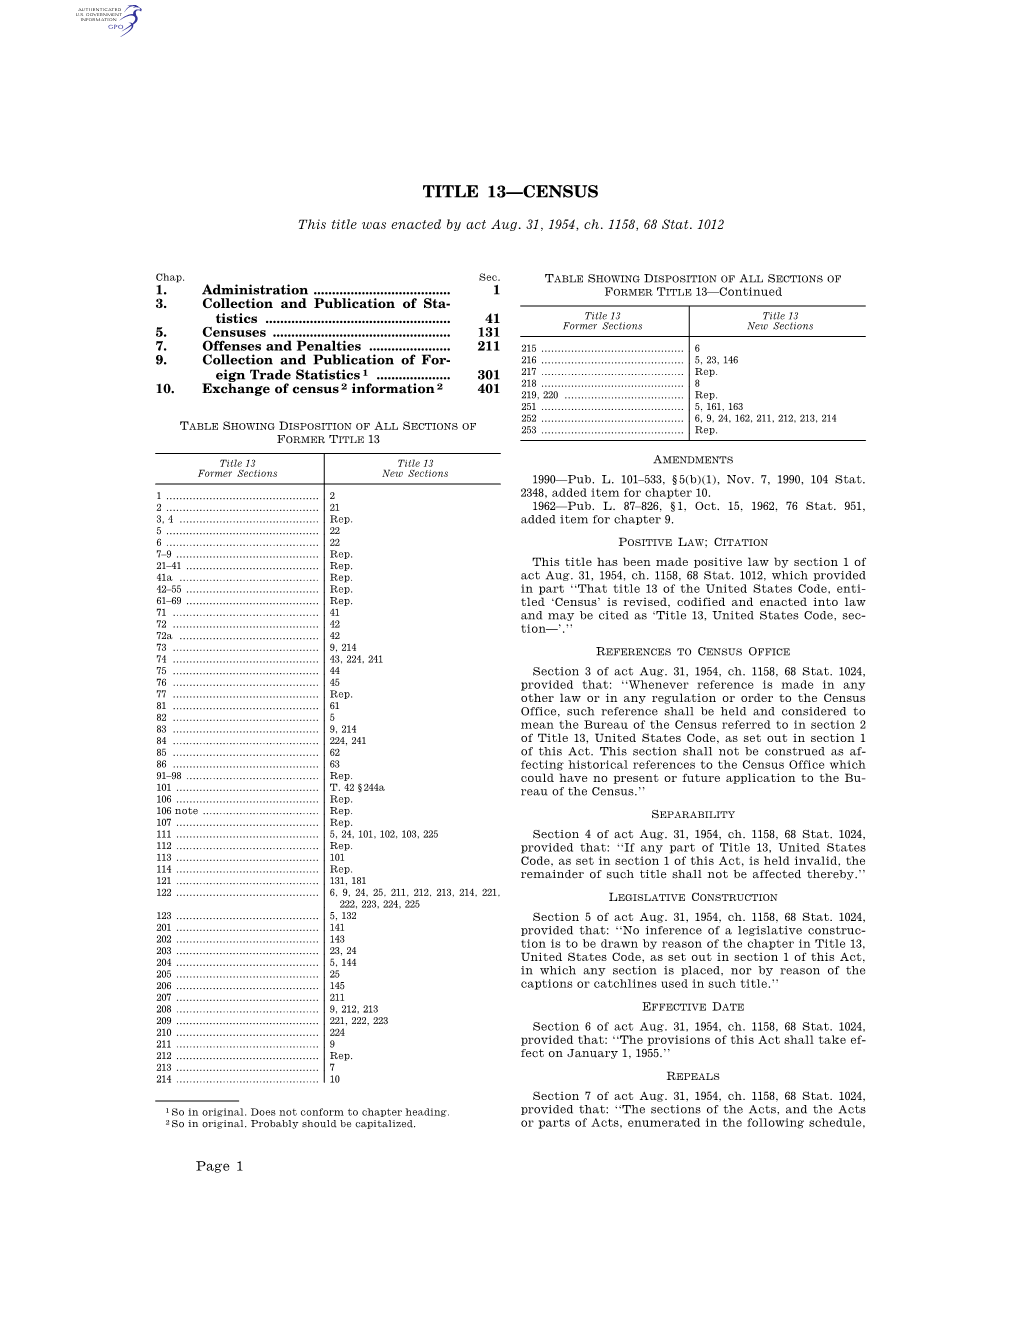 Title 13—Census